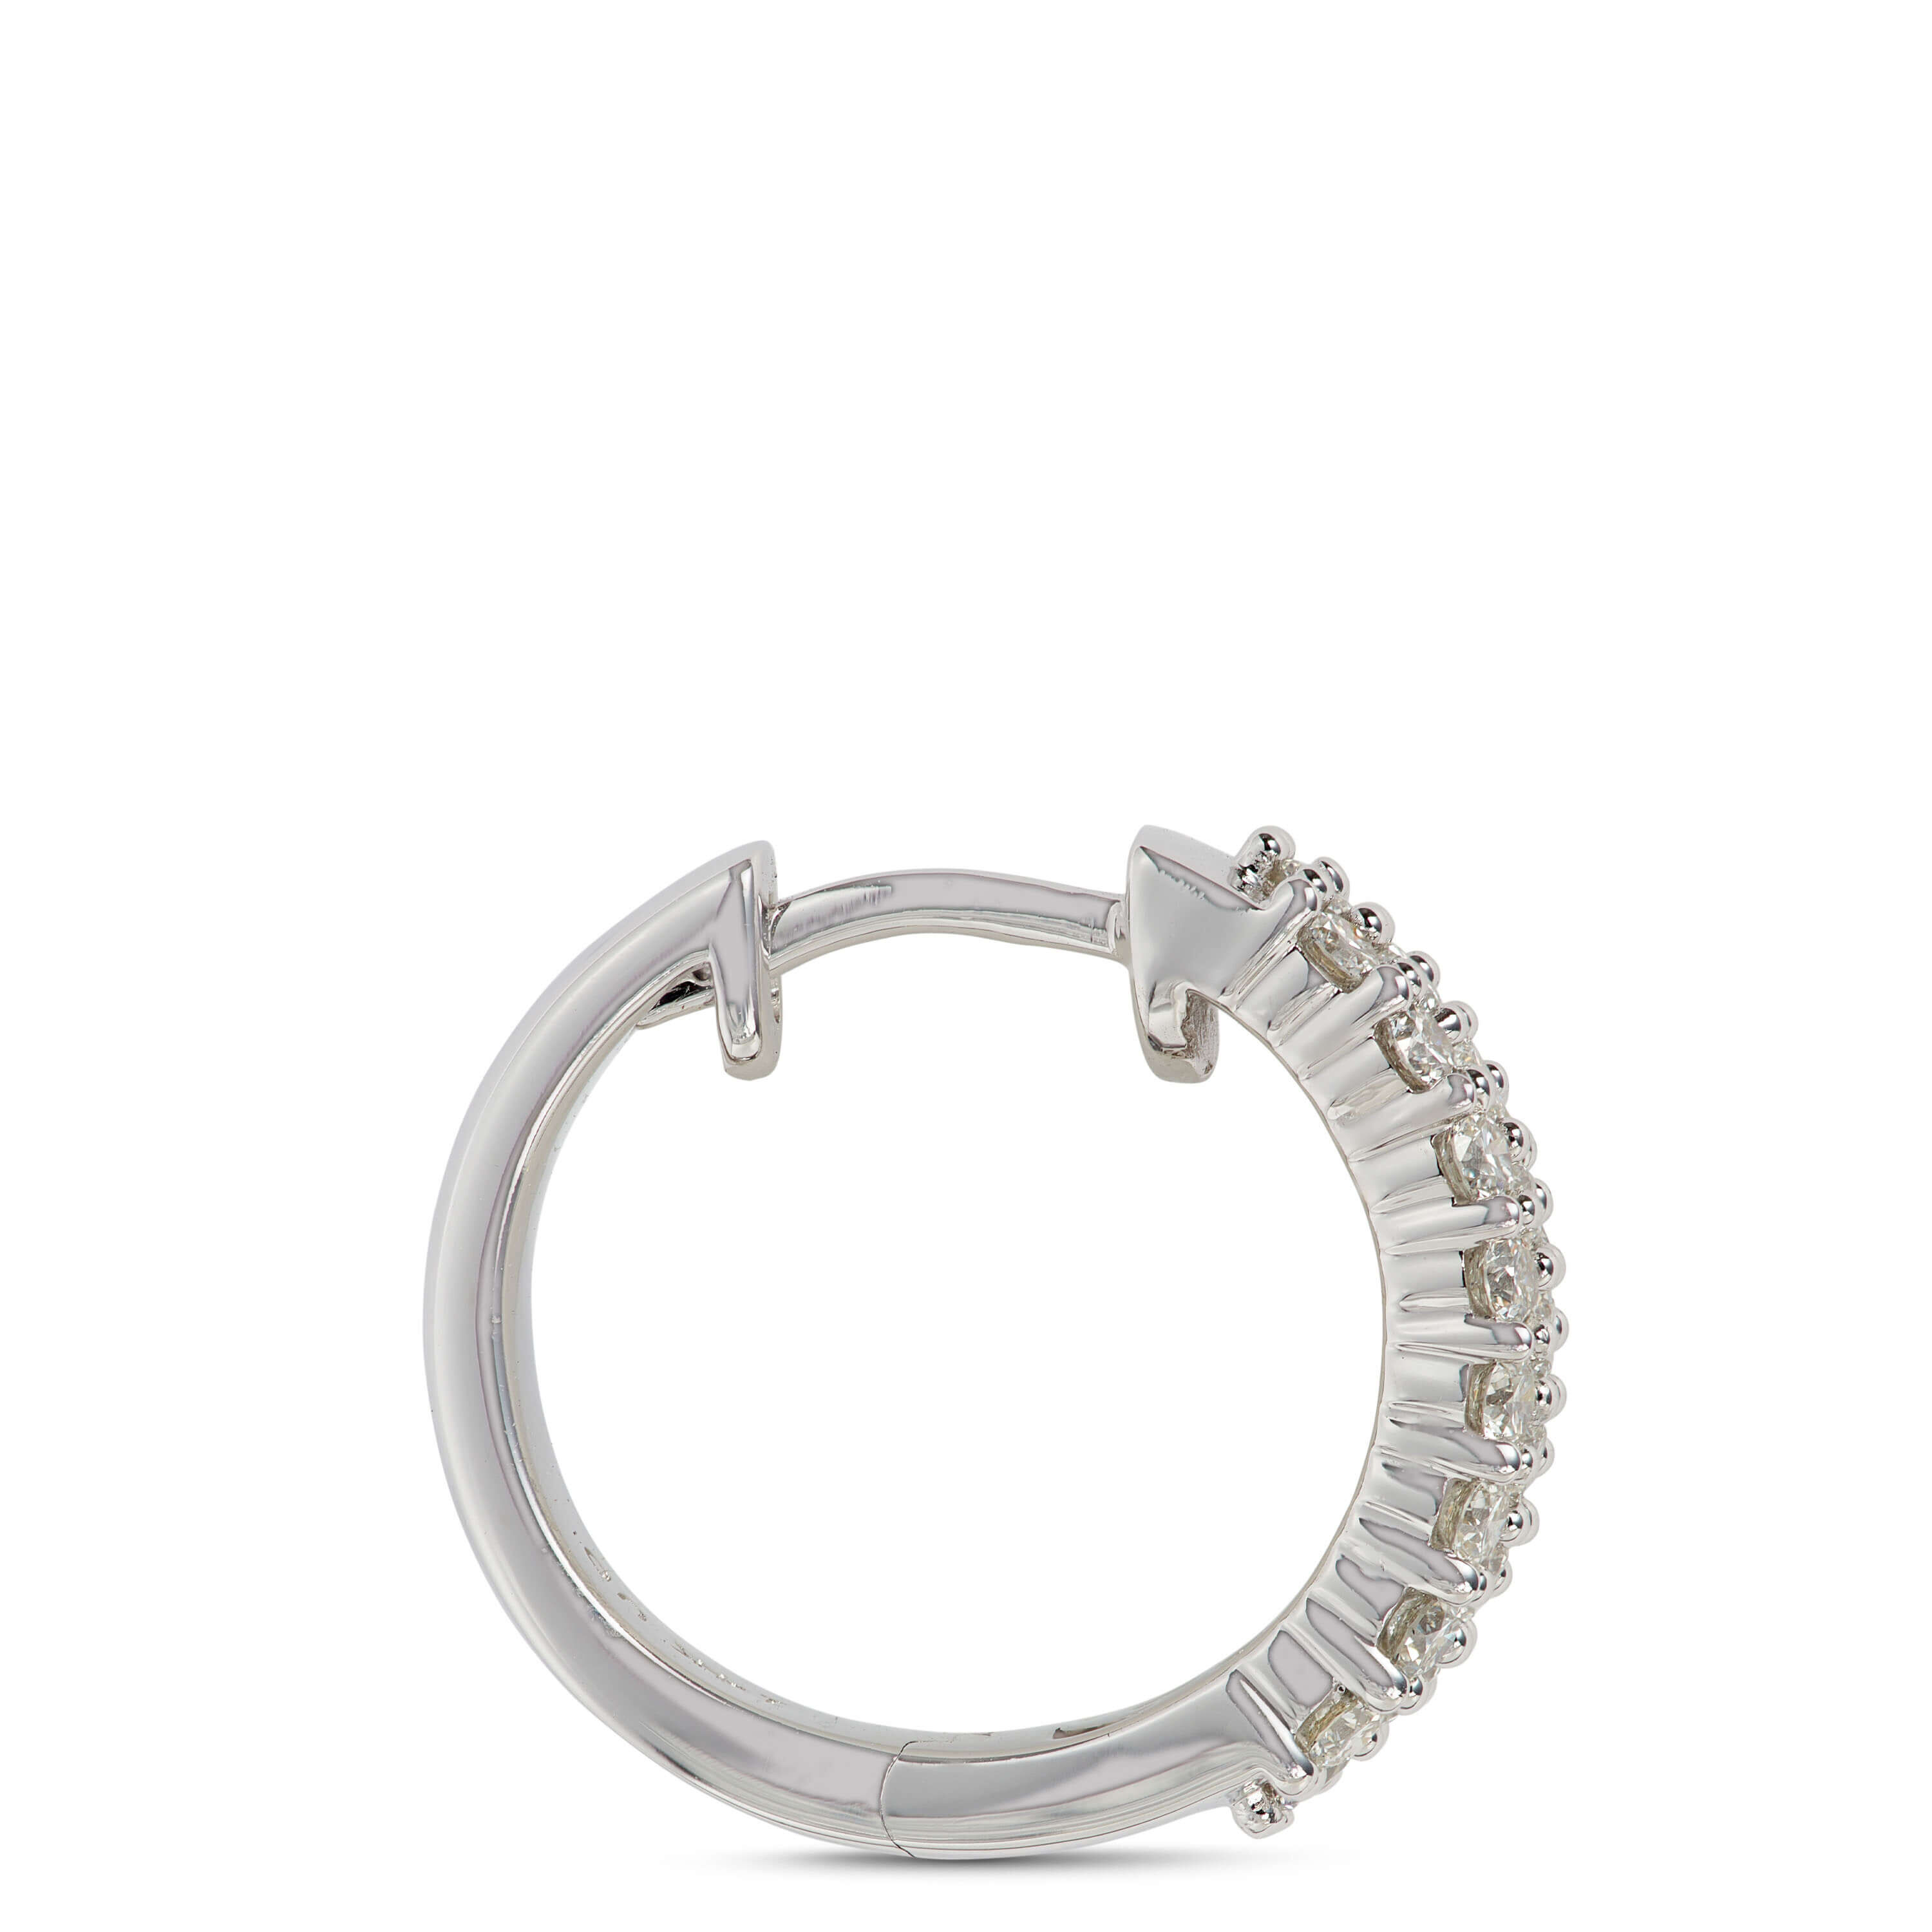 Pragnell RockChic diamond hoop earrings - White